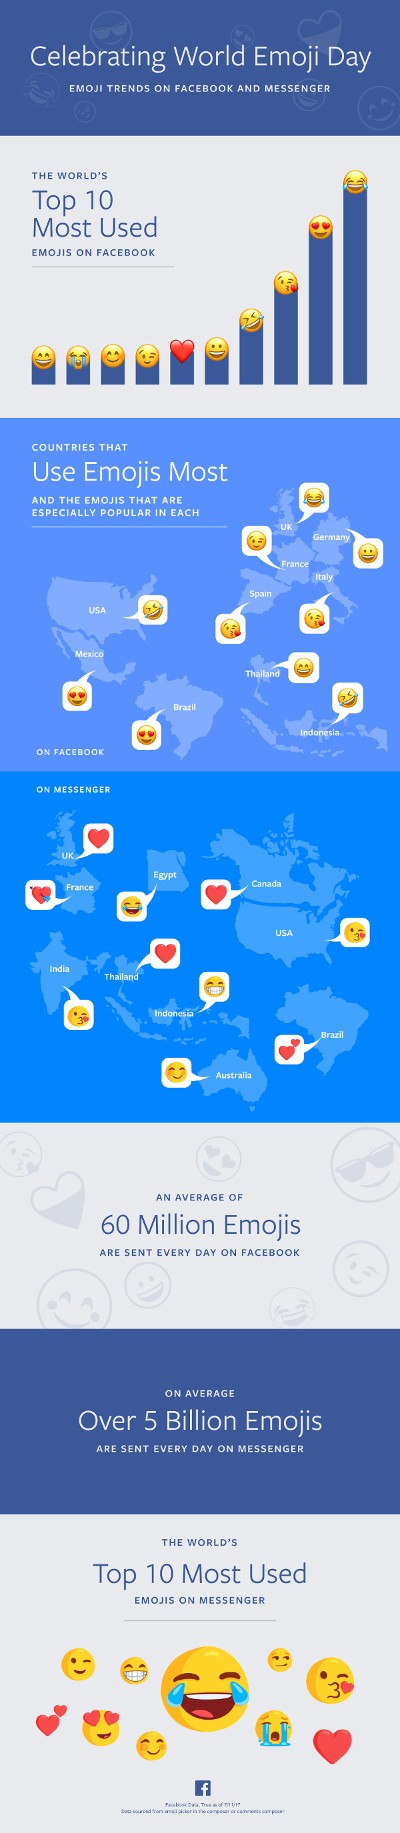 Facebook festeggia il World Emoji Day